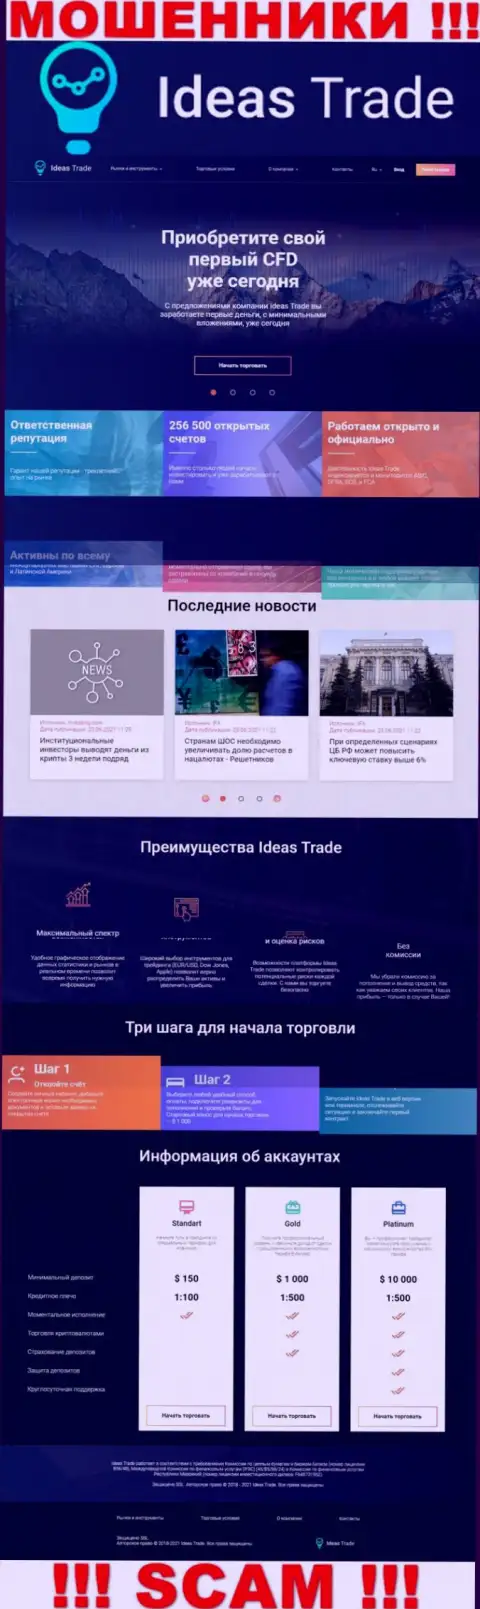 Официальный интернет-портал ворюг Ideas Trade